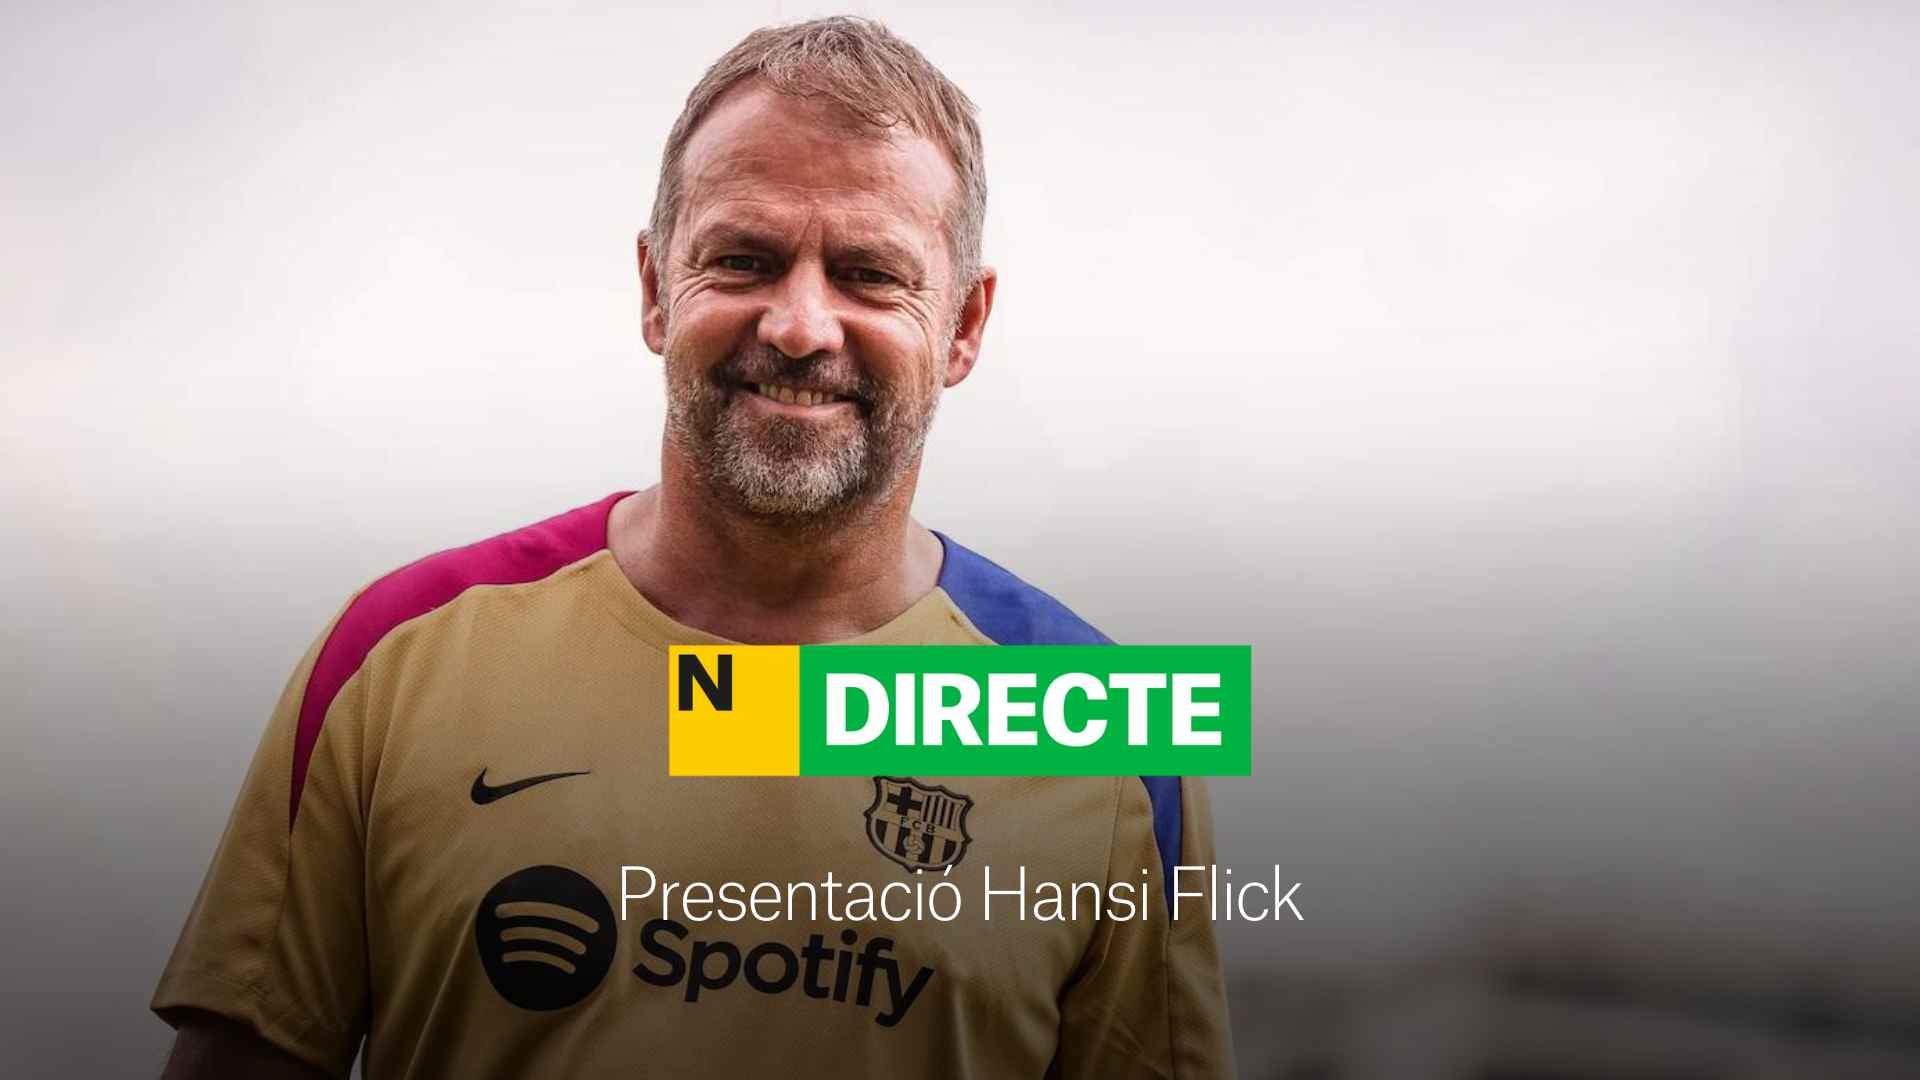 Presentació de Hansi Flick com a entrenador del Barça, DIRECTE